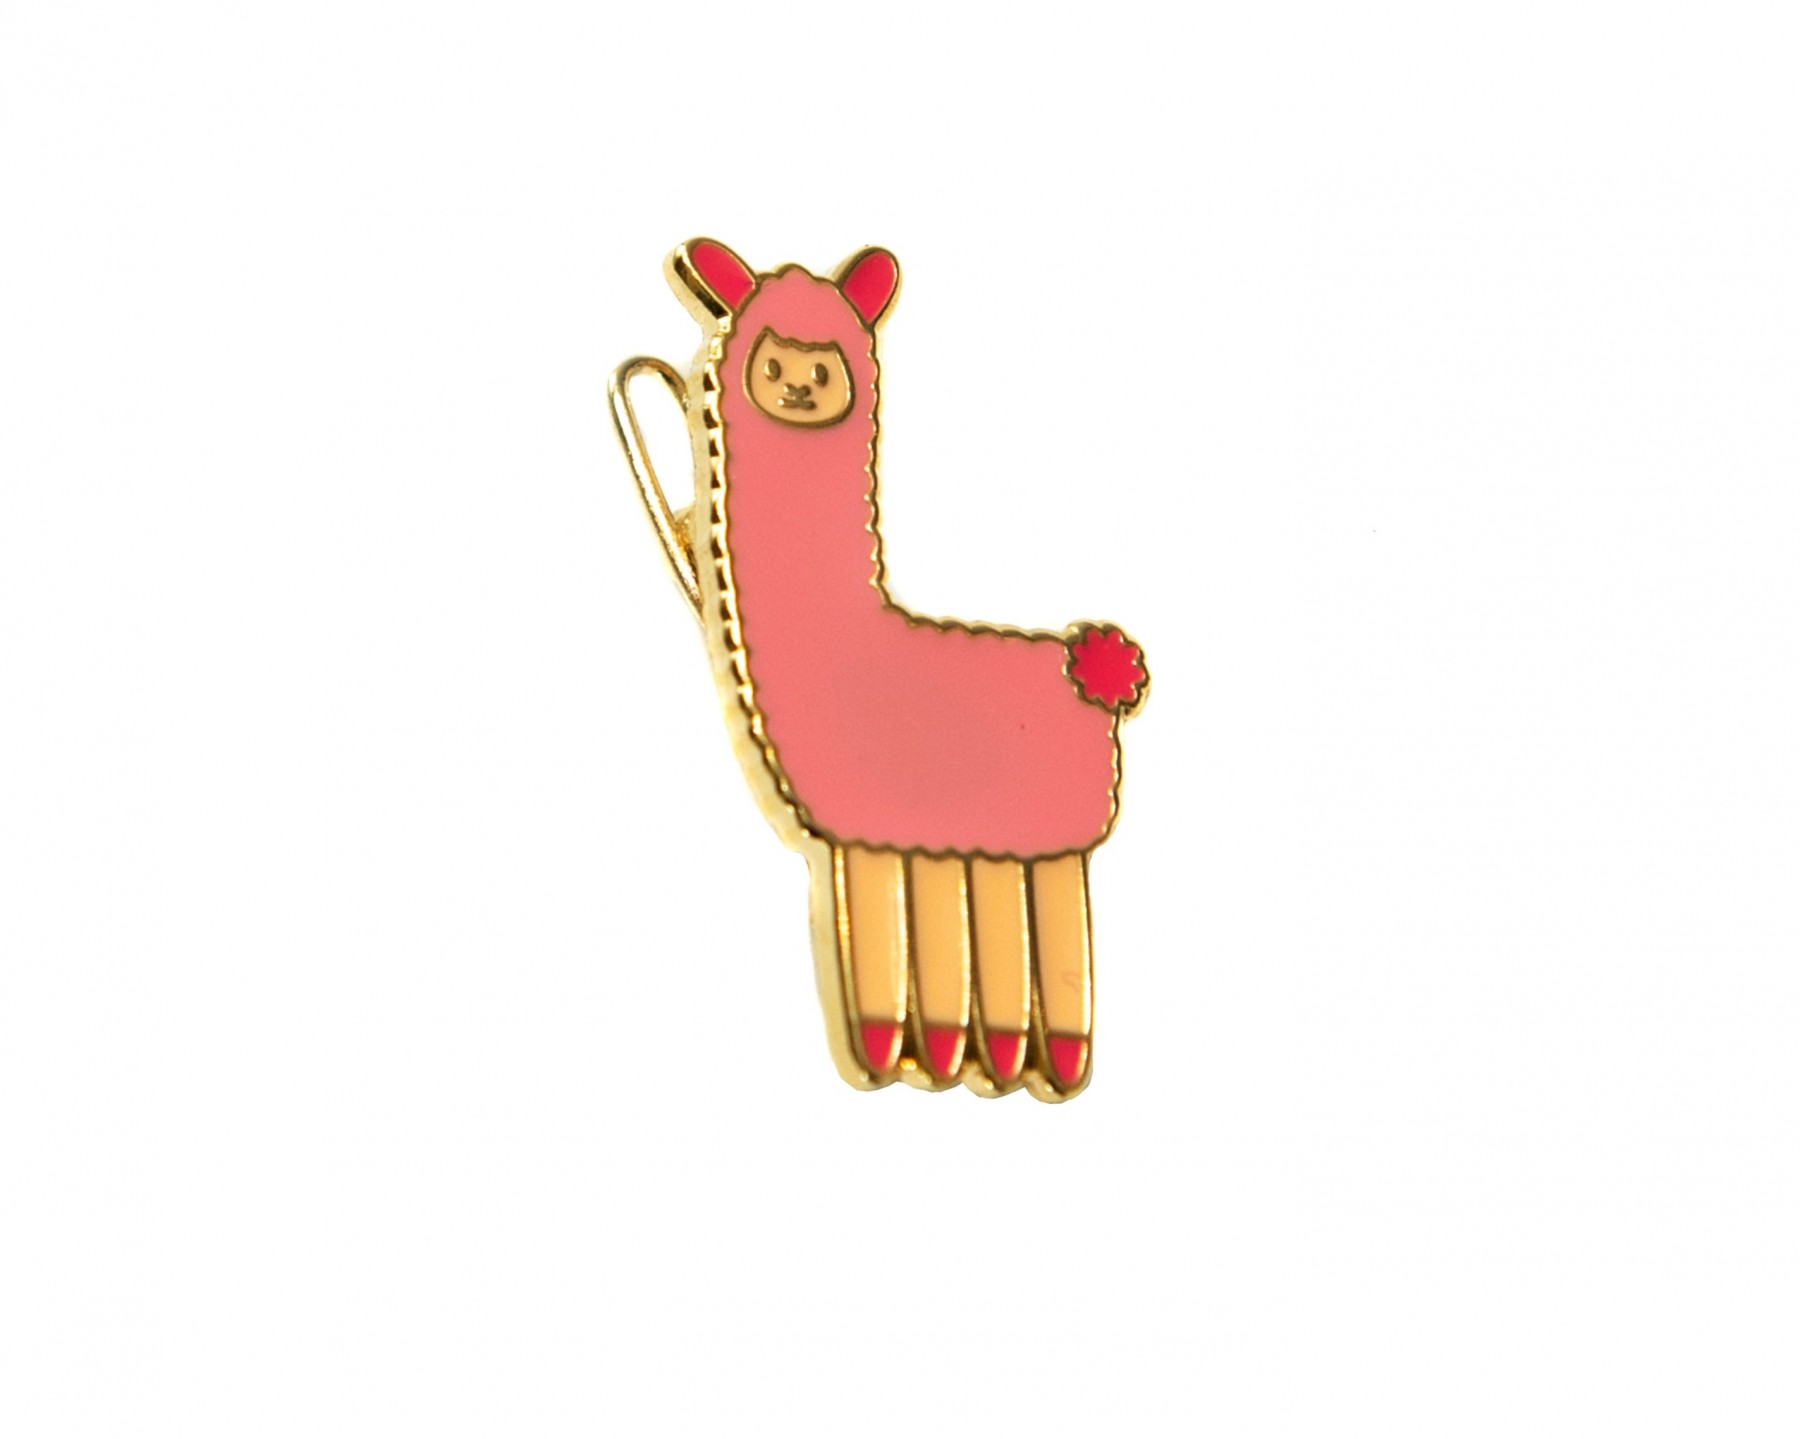 Llama hair clip